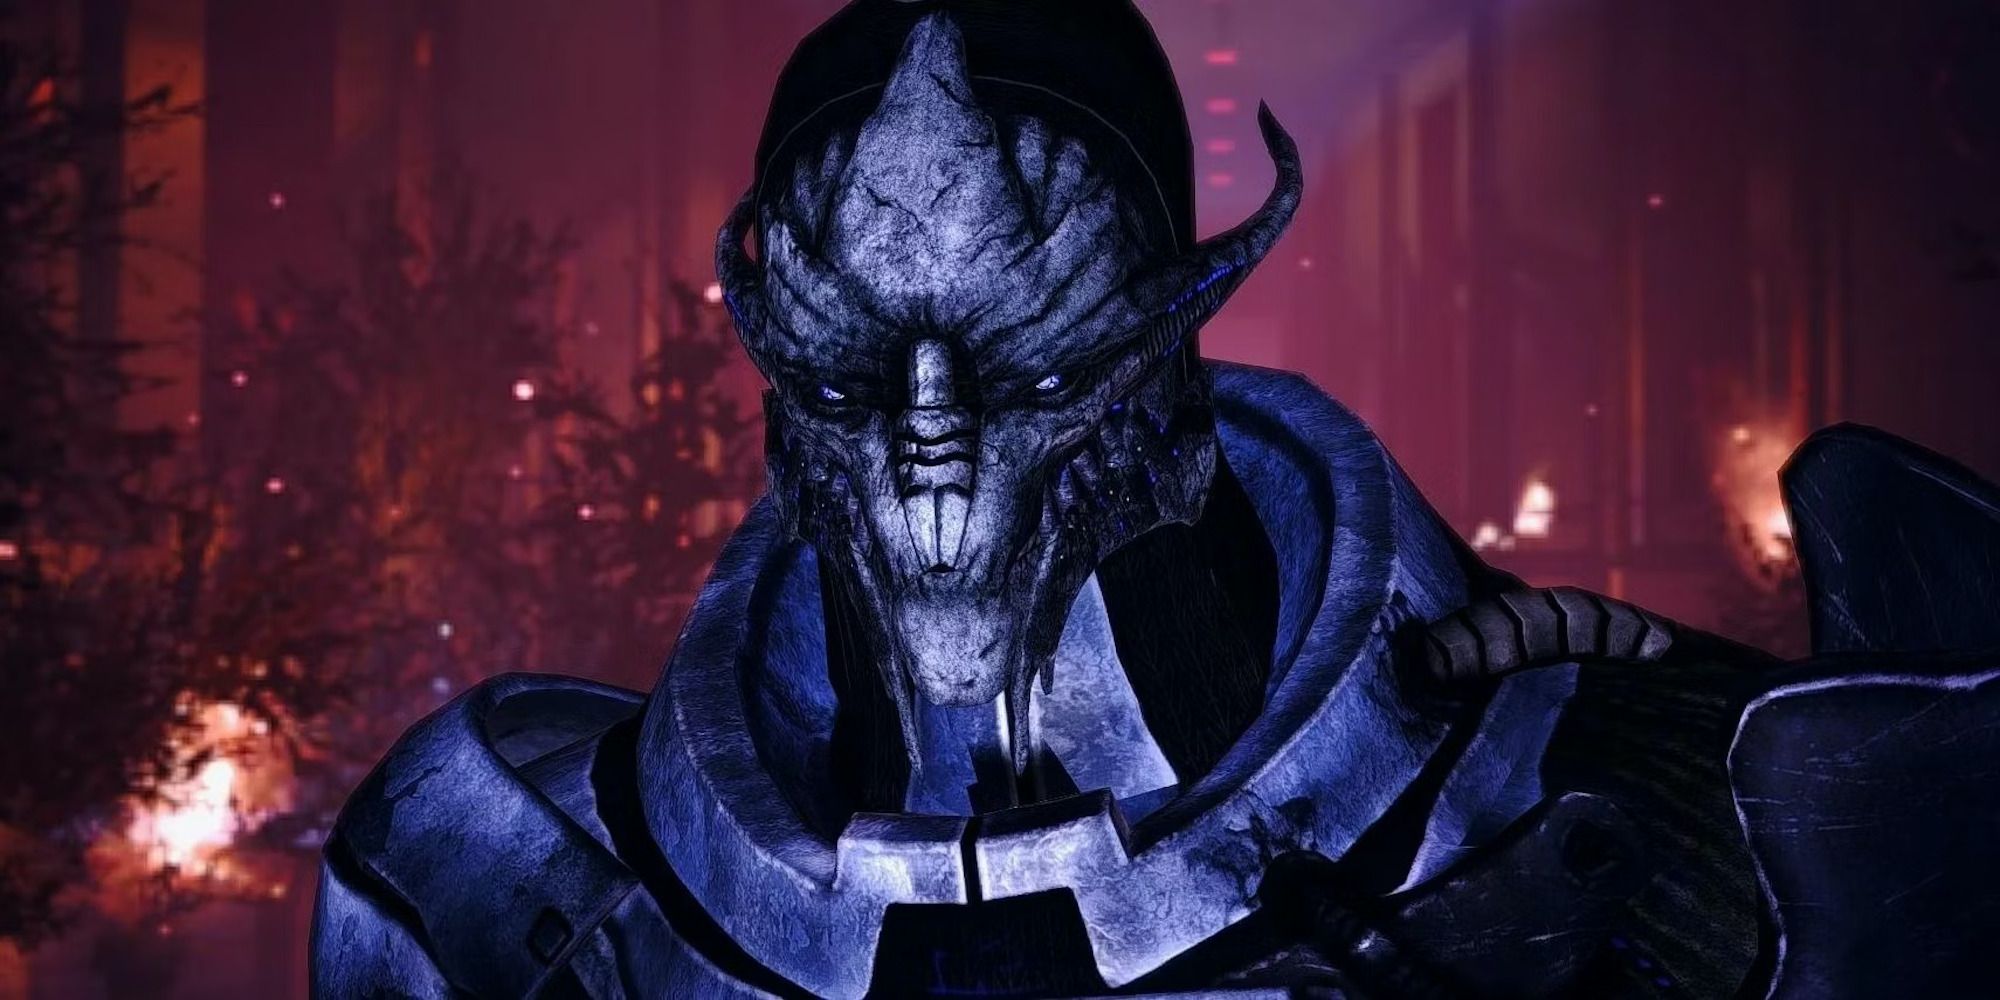 Saren Arterius from Mass Effect